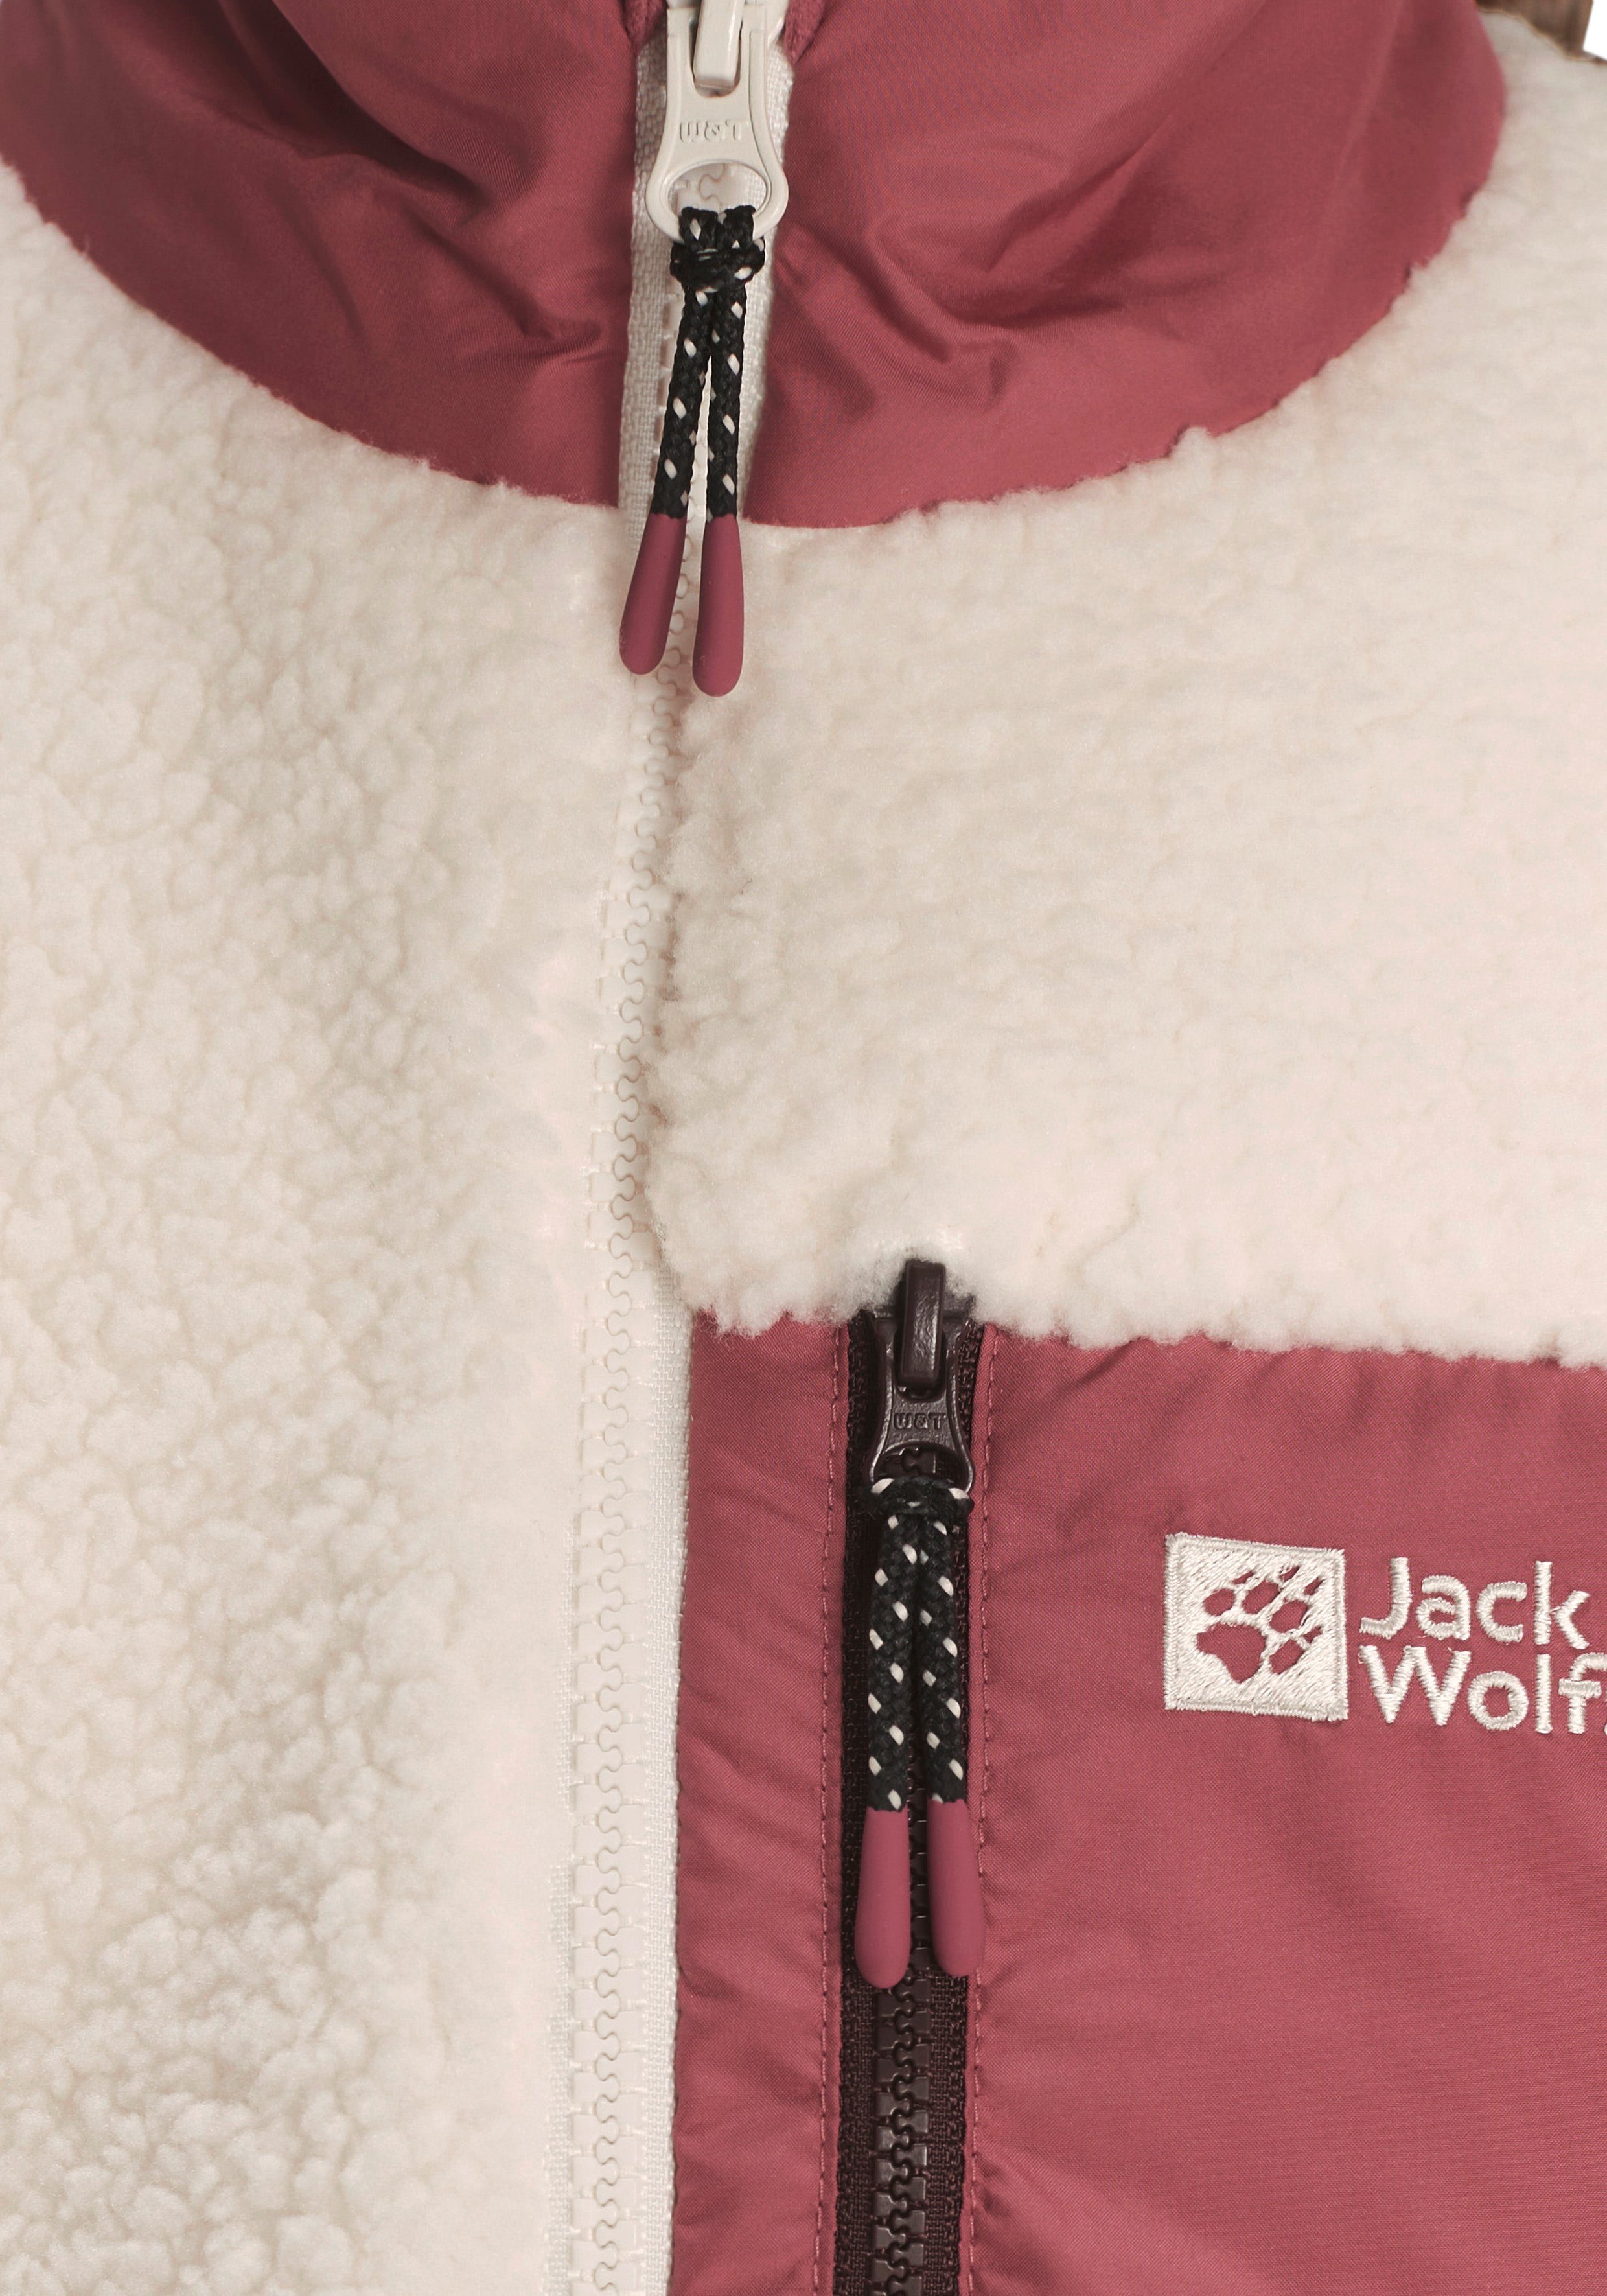 ICE JACKET Jack Wolfskin CURL aus K 300er-Fleece Fleecejacke